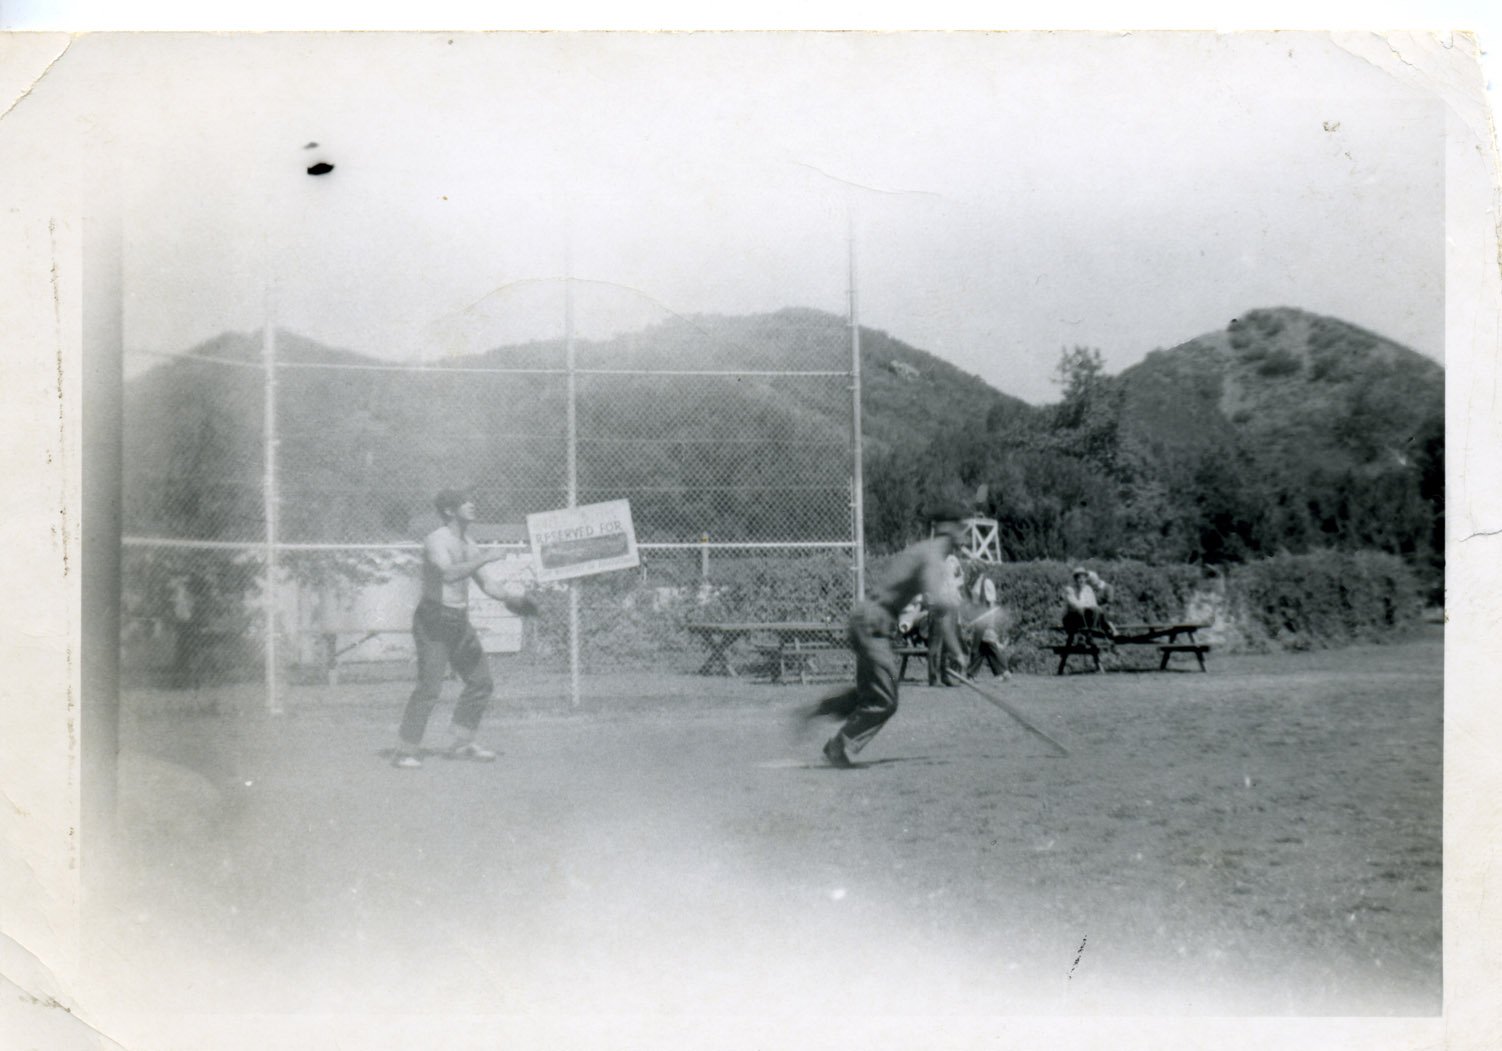 Playing baseball at Lake Enchanto